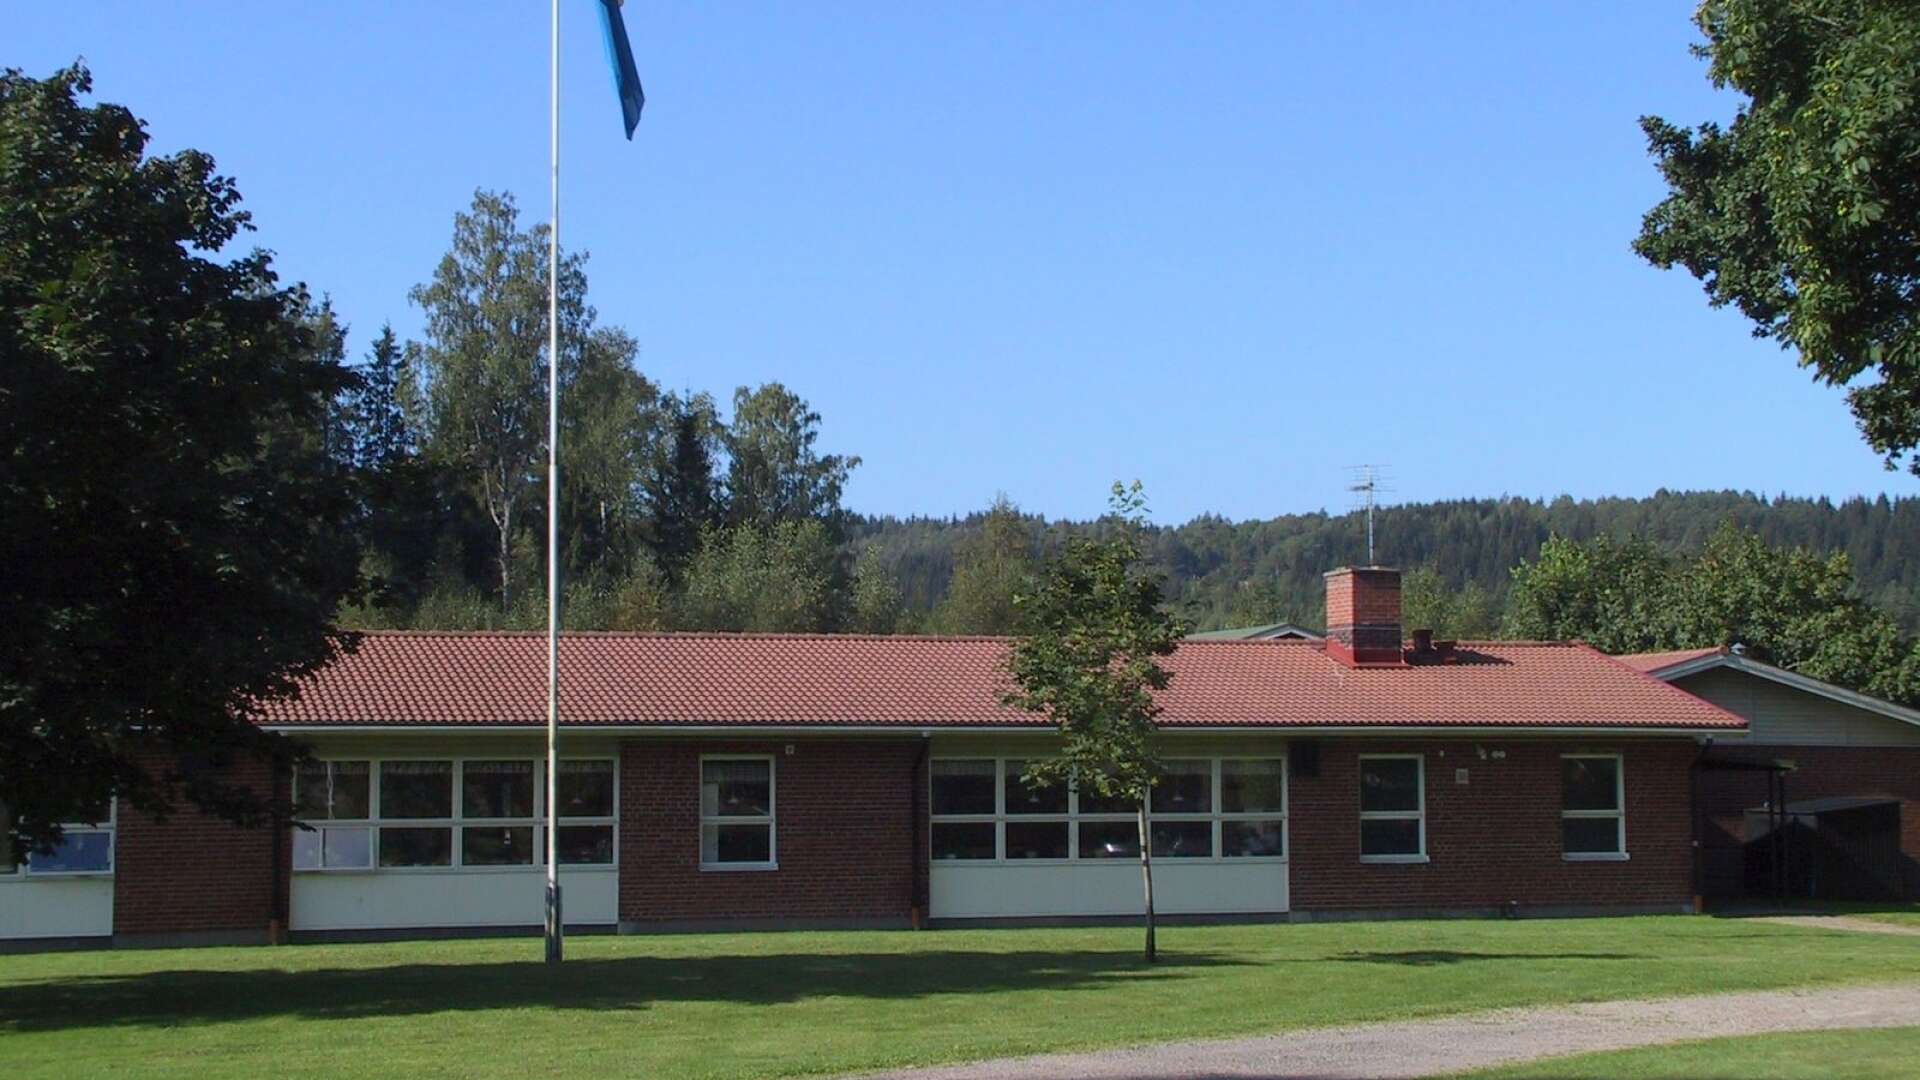 Edsleskogs skola utanför Åmål har utsatts för skadegörelse./ARKIVBILD